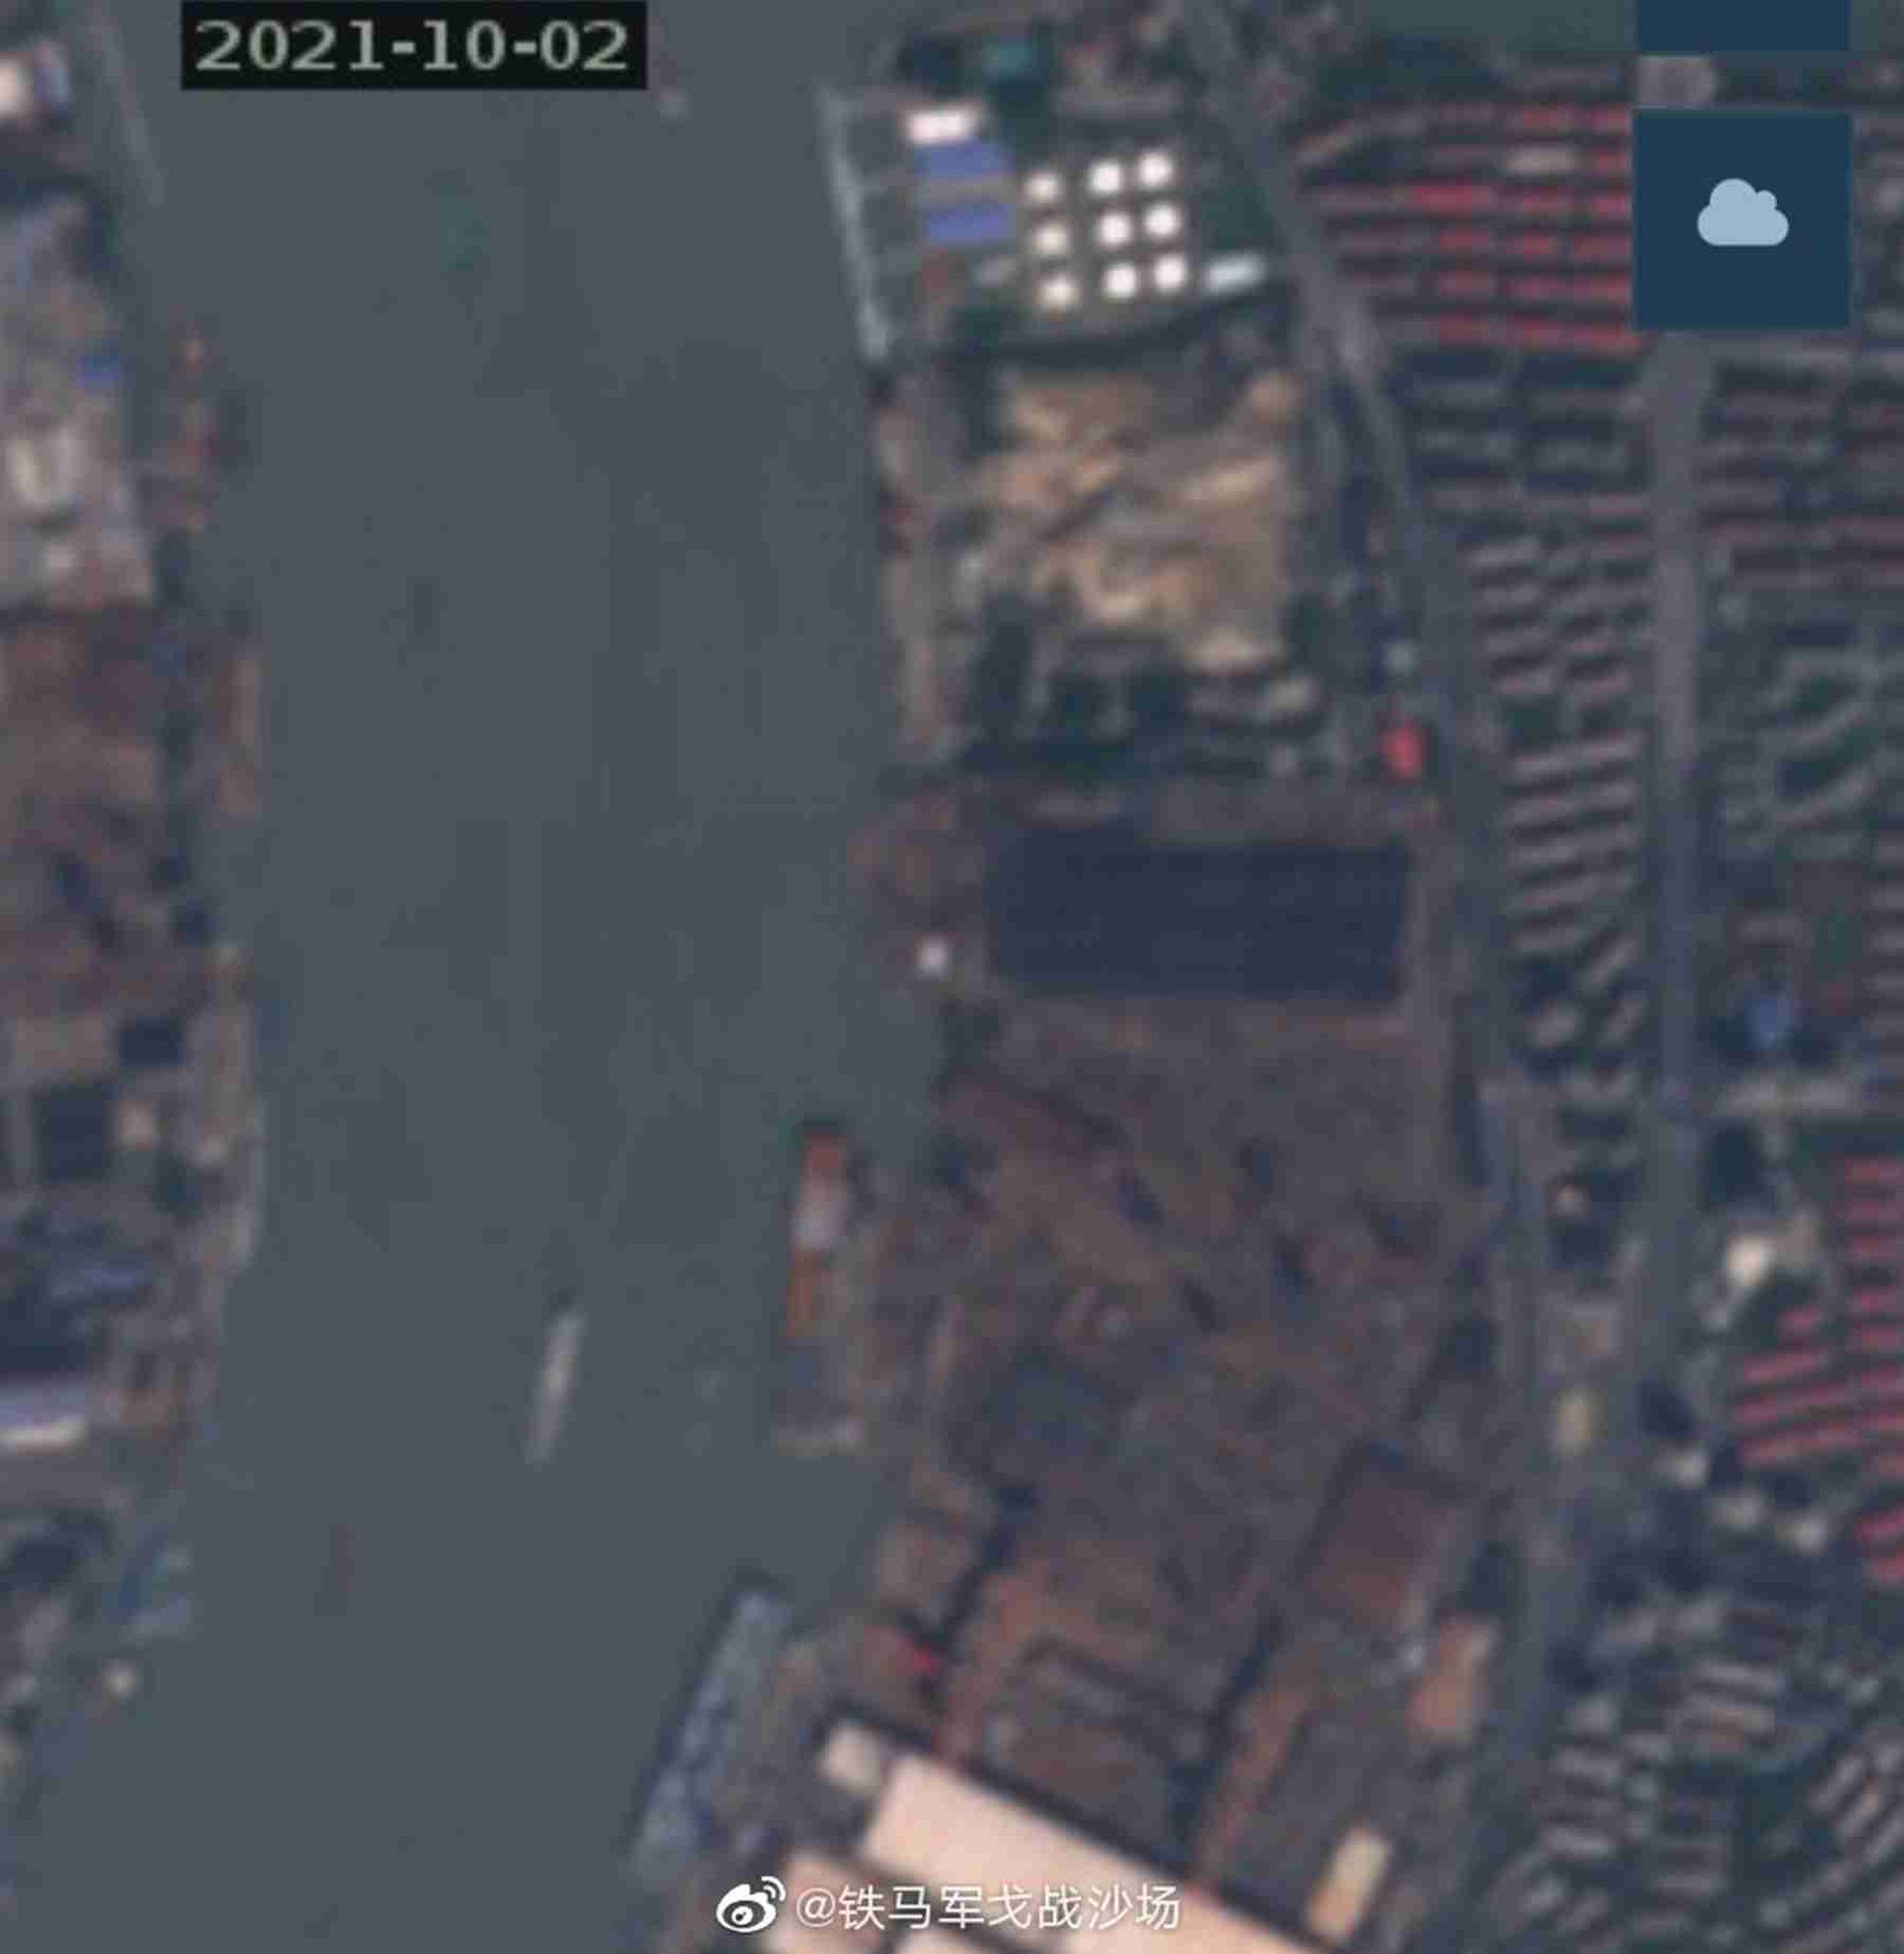 075三号舰最新卫星照。这是拍摄于10月2日的卫星照。（微博@铁马军戈战沙场）